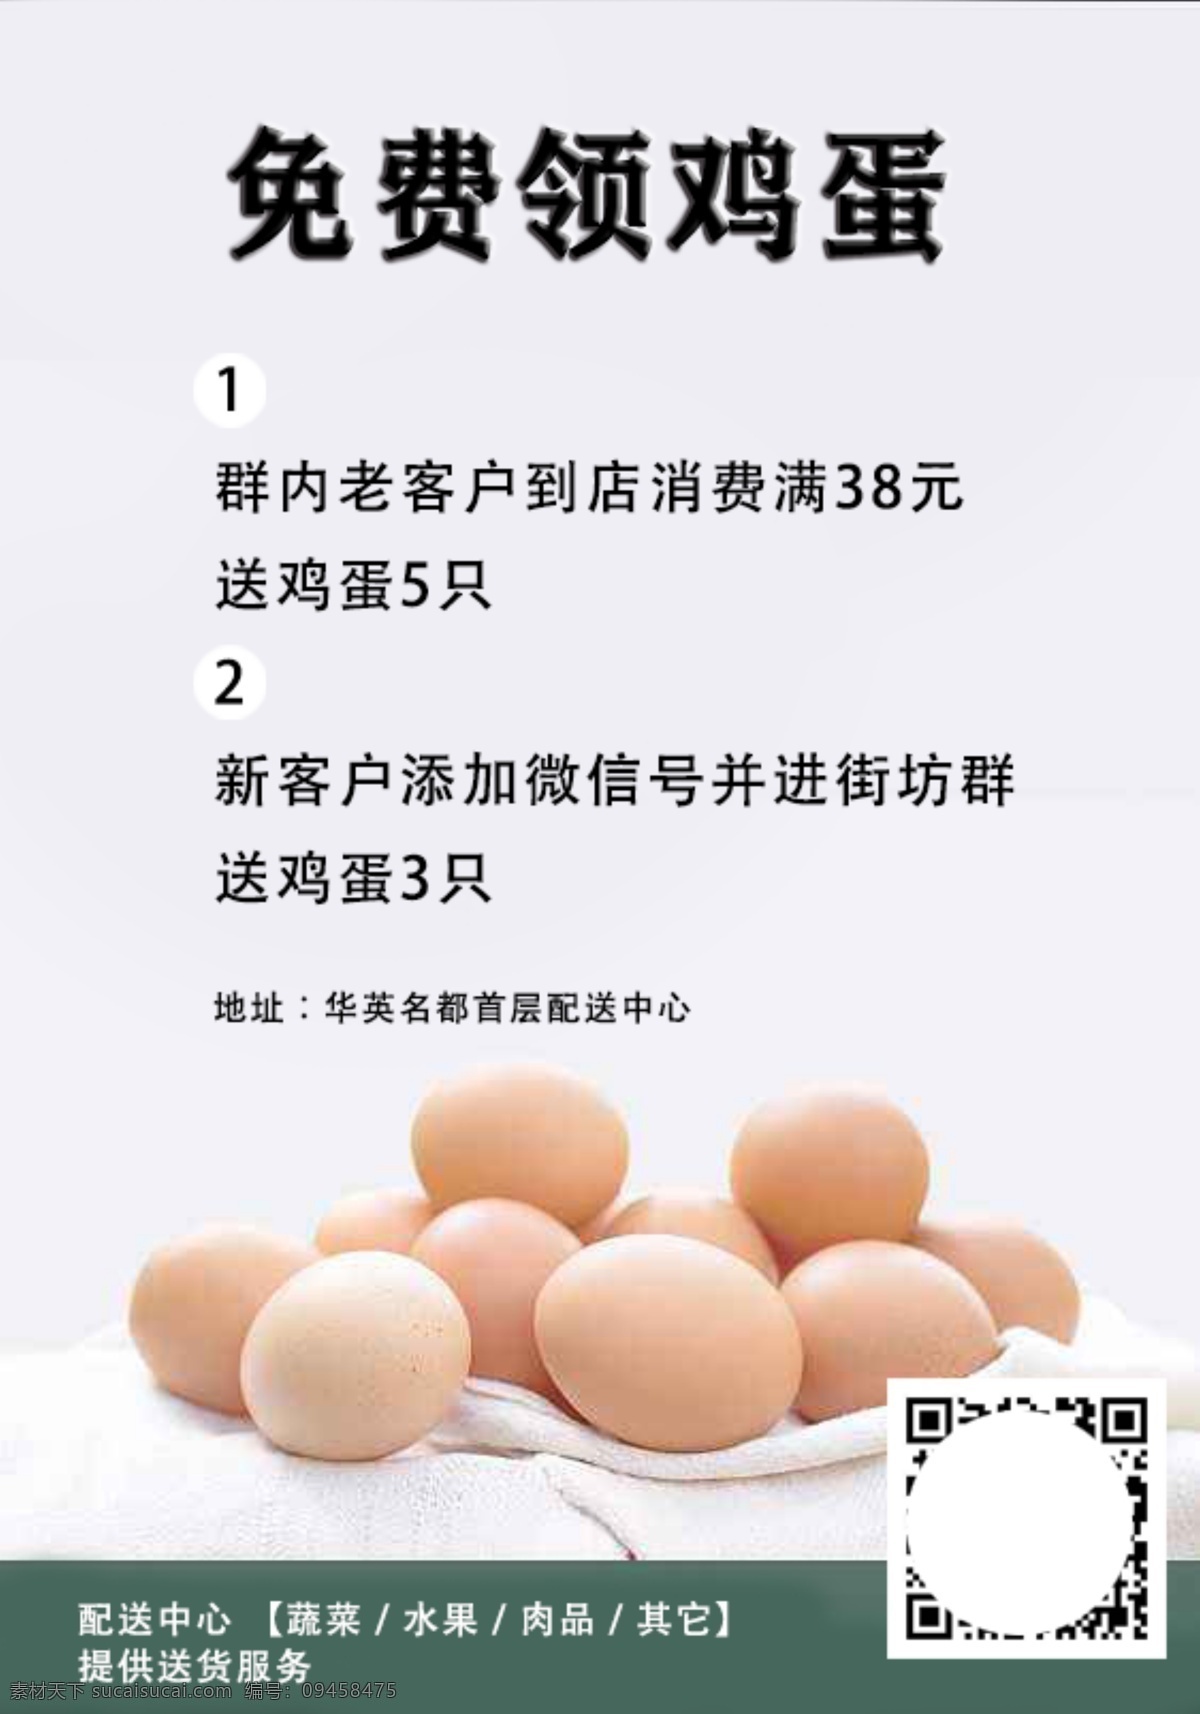 简洁 版 免费 领 鸡蛋 海报 简洁版 领鸡蛋 宣传 福利